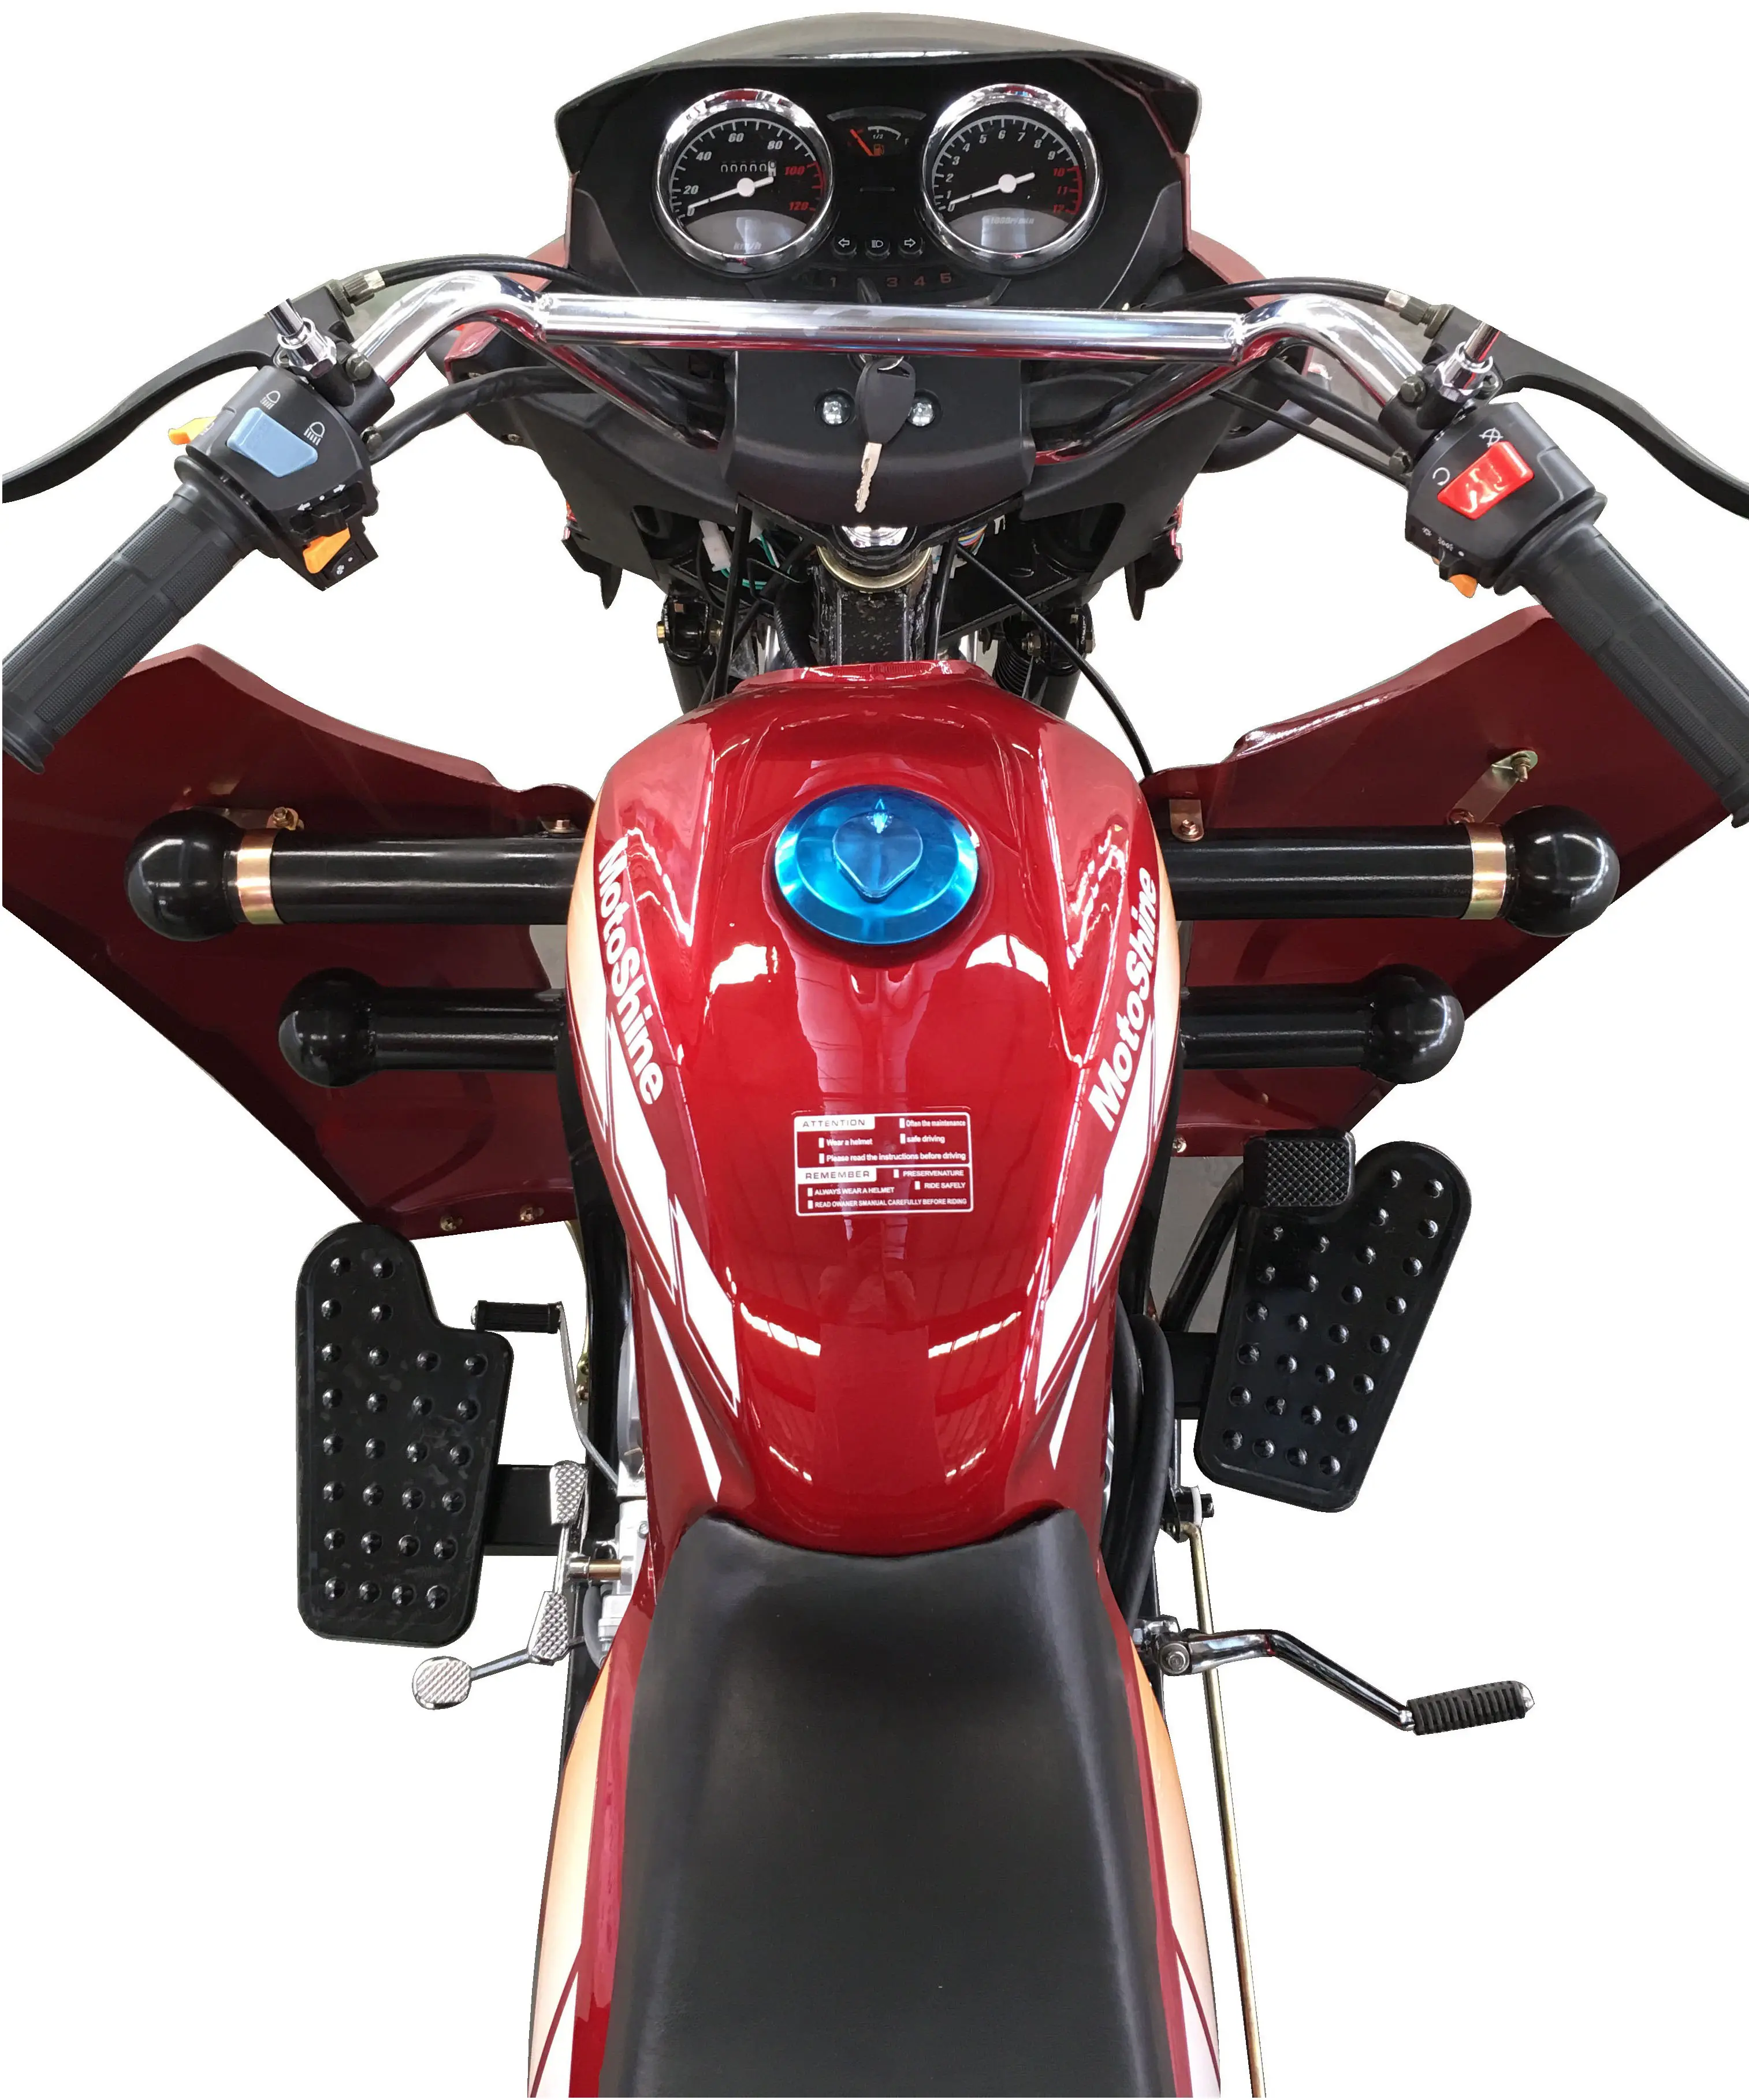 Triciclo de 5 ruedas para motocicleta, accesorio de carga pesada, para MODELO DE CARGA KING-5R